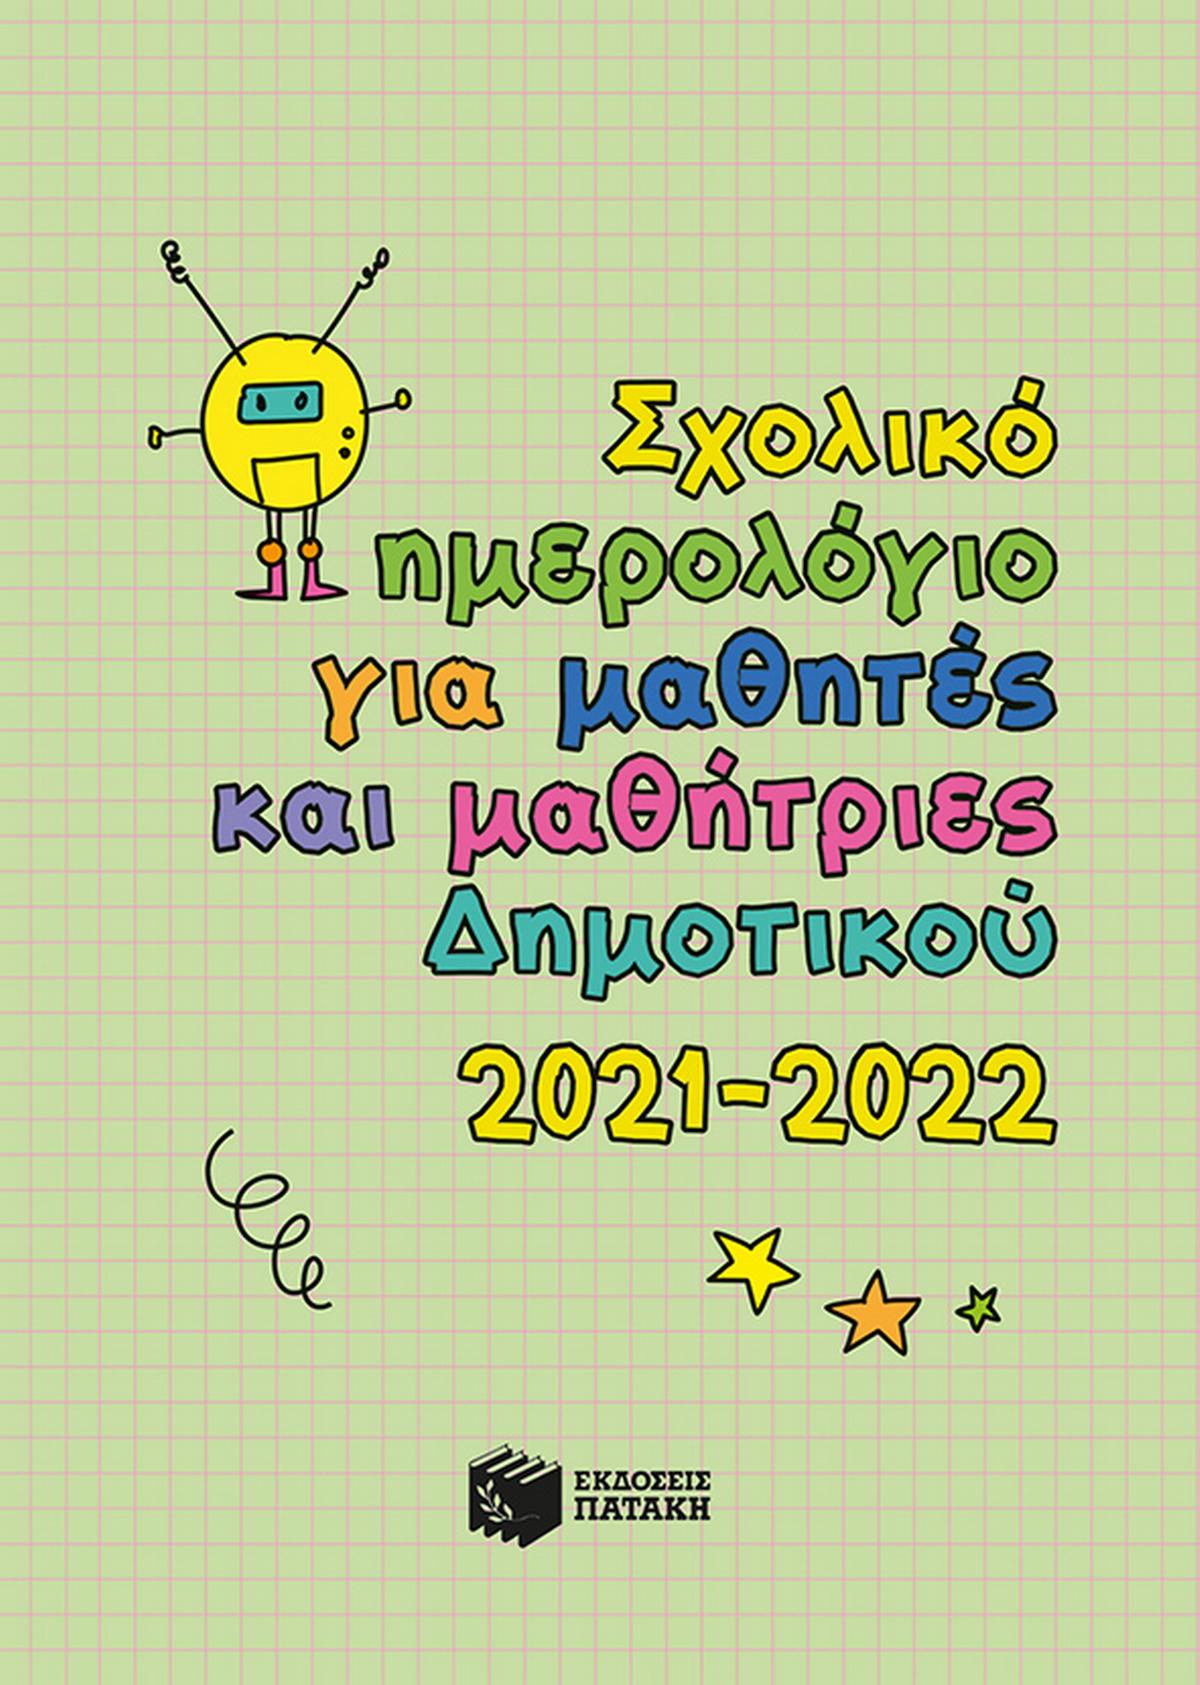 Σχολικό ημερολόγιο για μαθητές και μαθήτριες δημοτικού 2021-2022